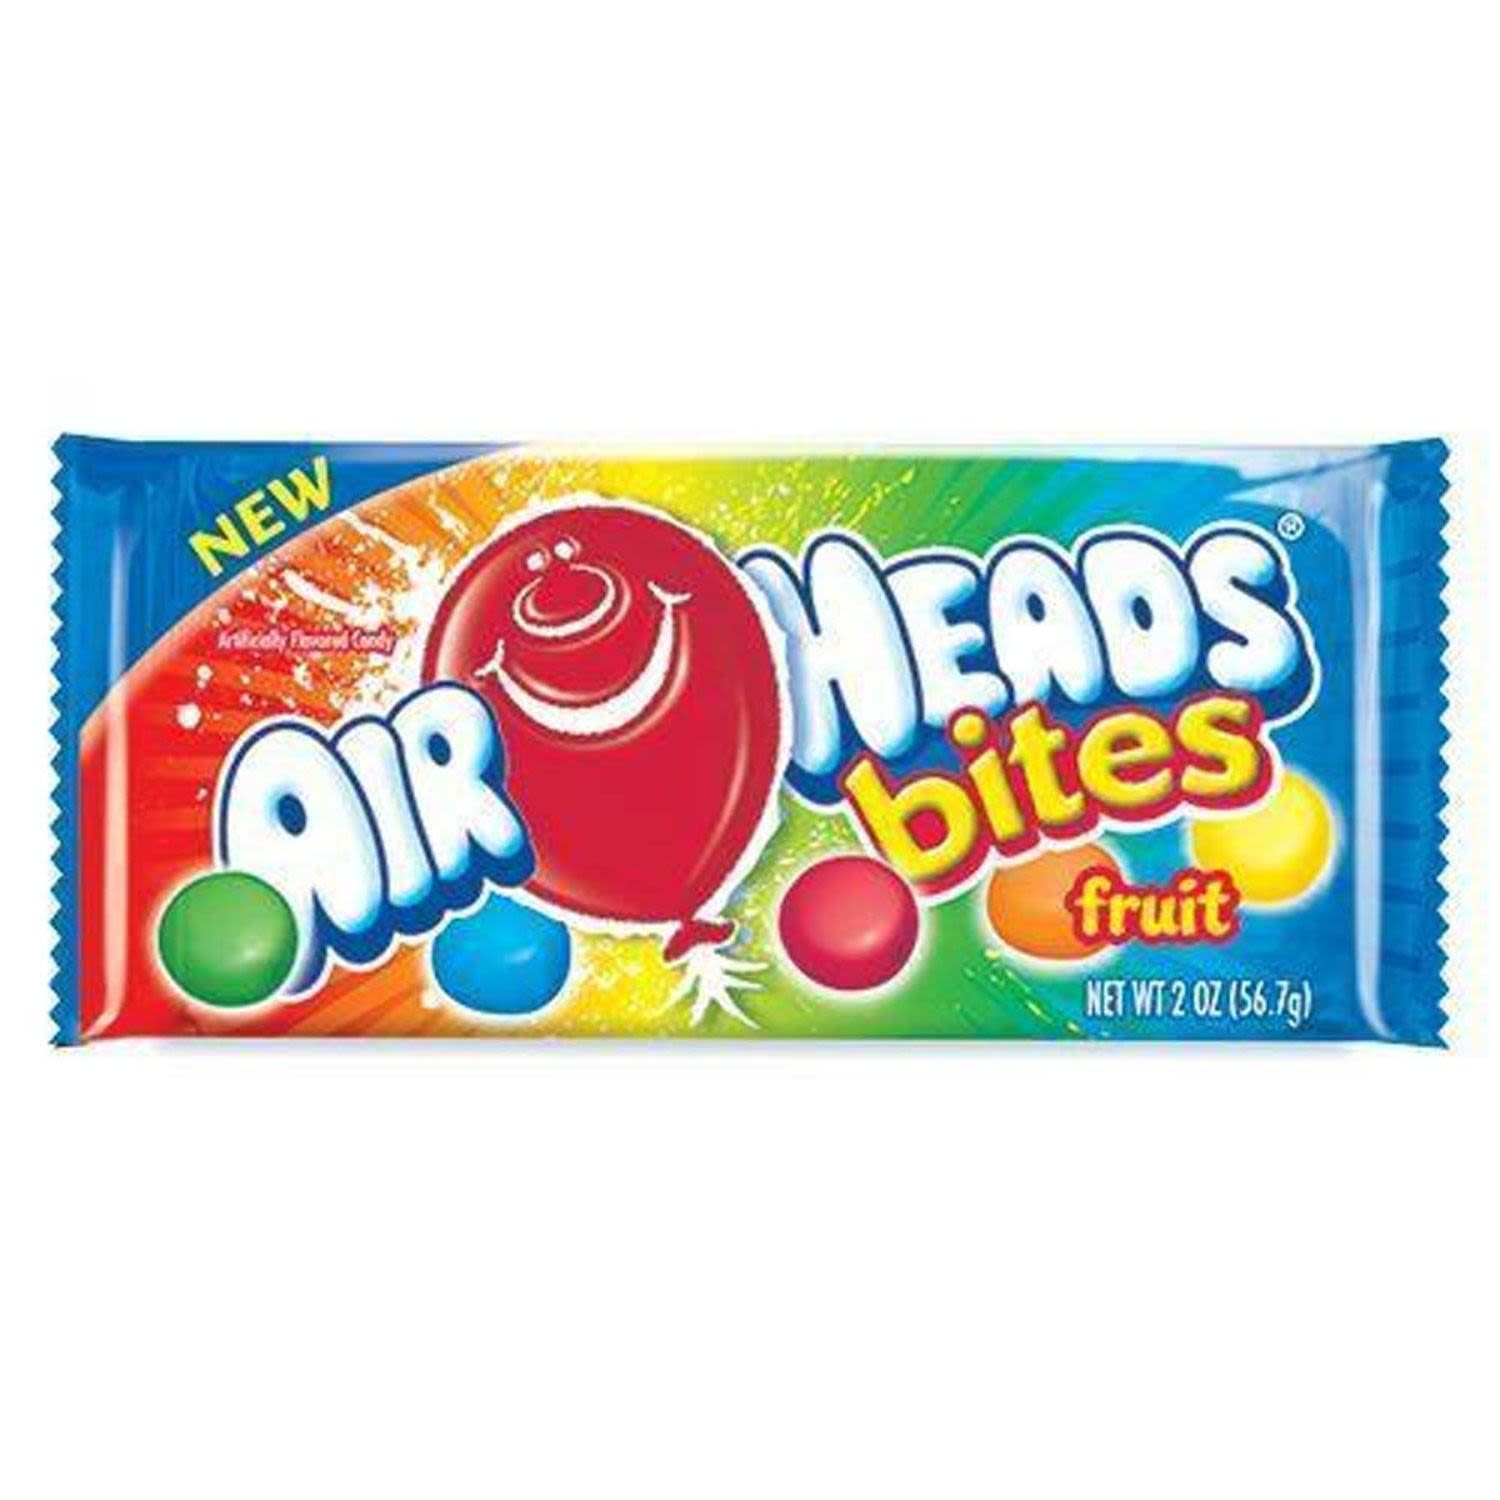 Airheads Bites Original Fruit , 57 Gram